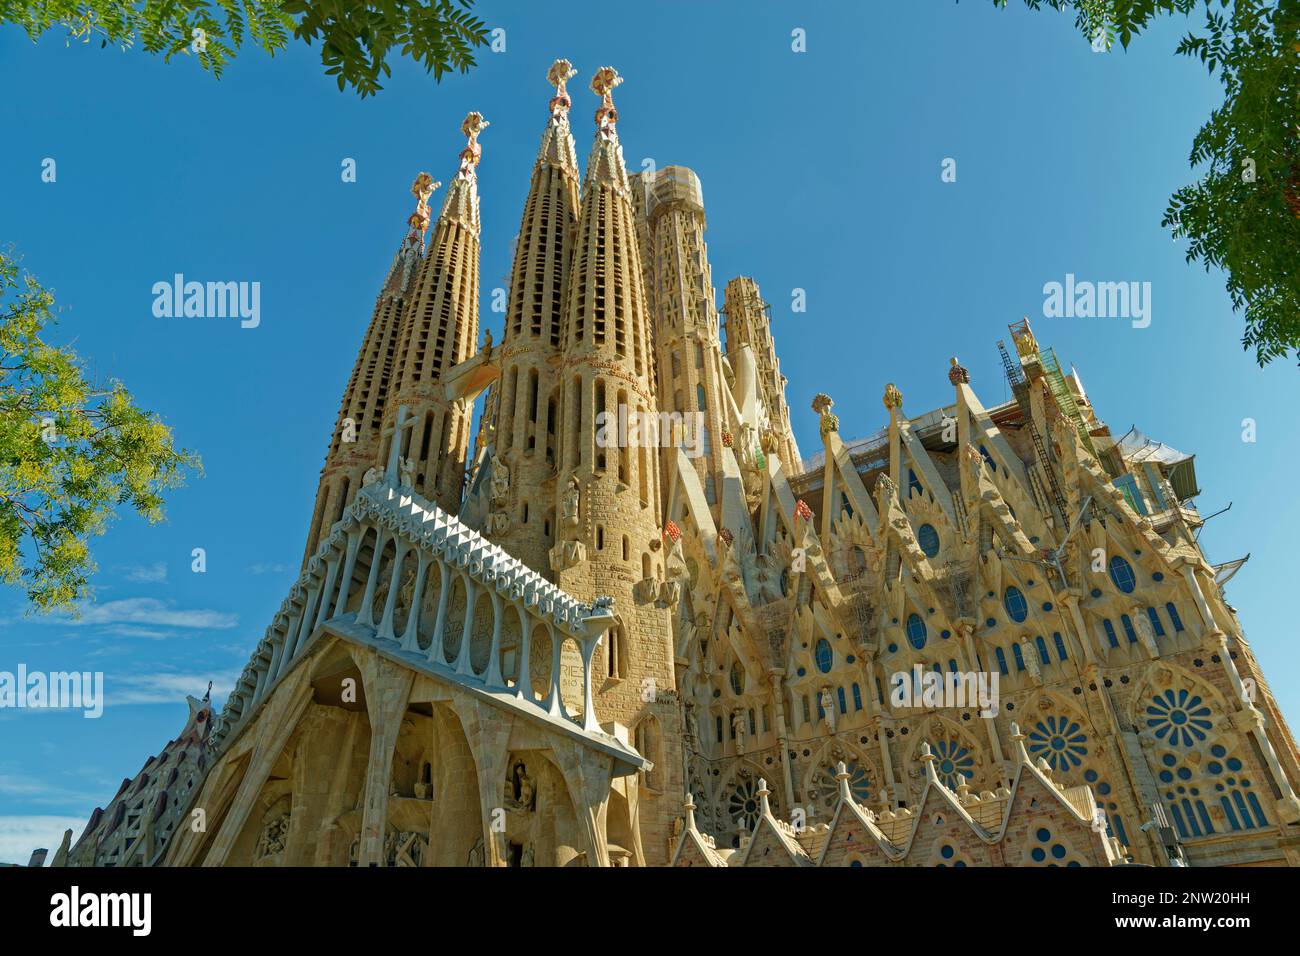 La face sud de la Sagrada Familia, Basílica de la Sagrada Familia conçue par Antoni Gaudi à Barcelone en Espagne. Banque D'Images